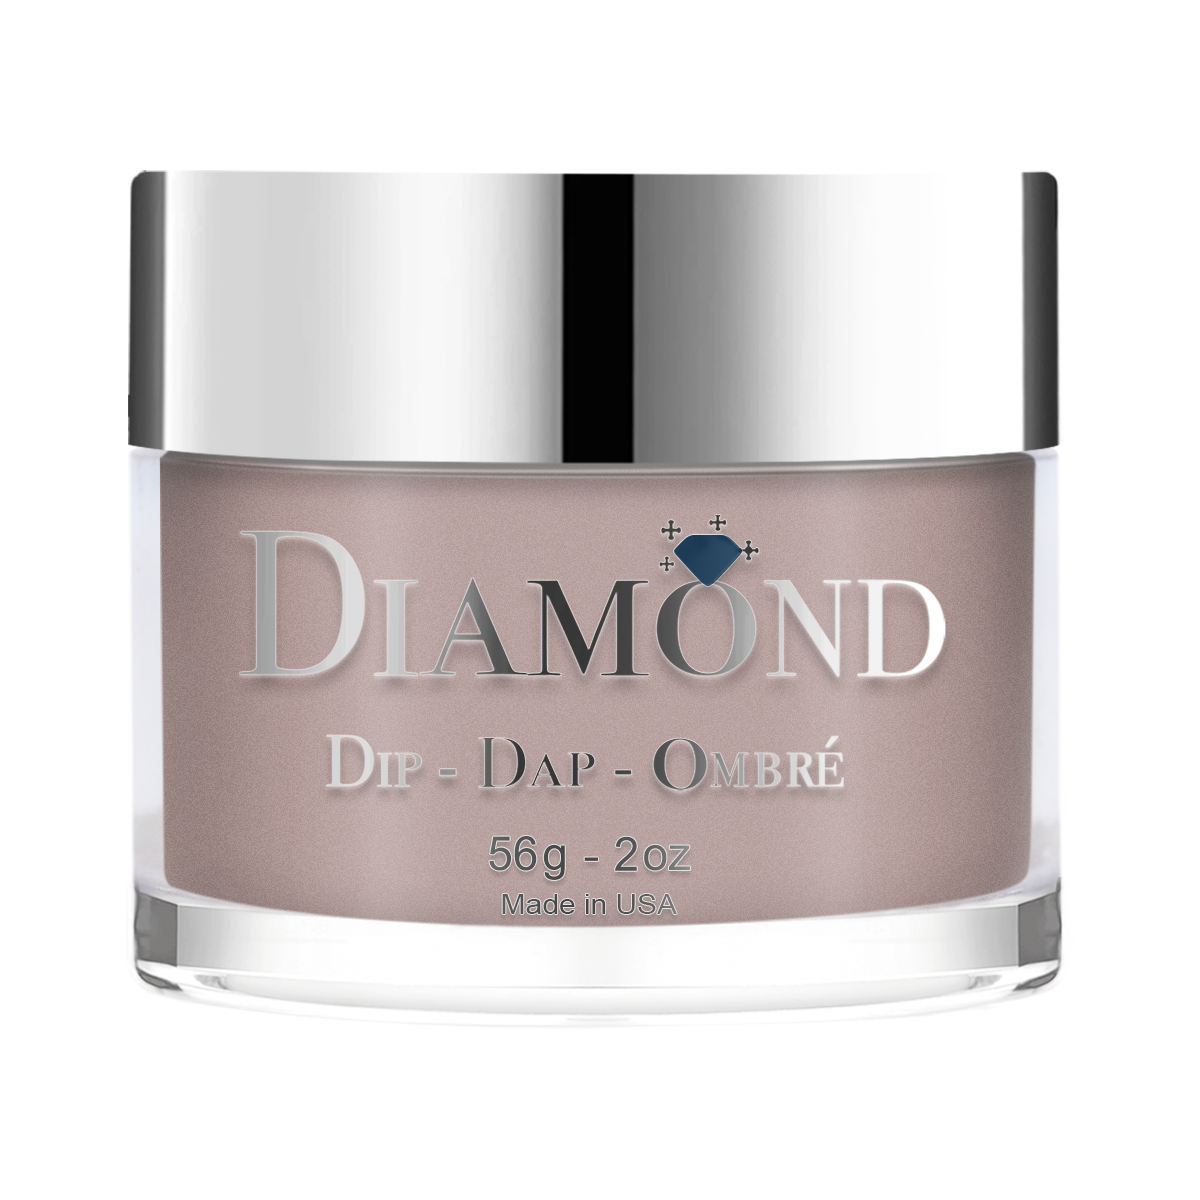 Diamond Dip & Dap Ombre Powder - 034